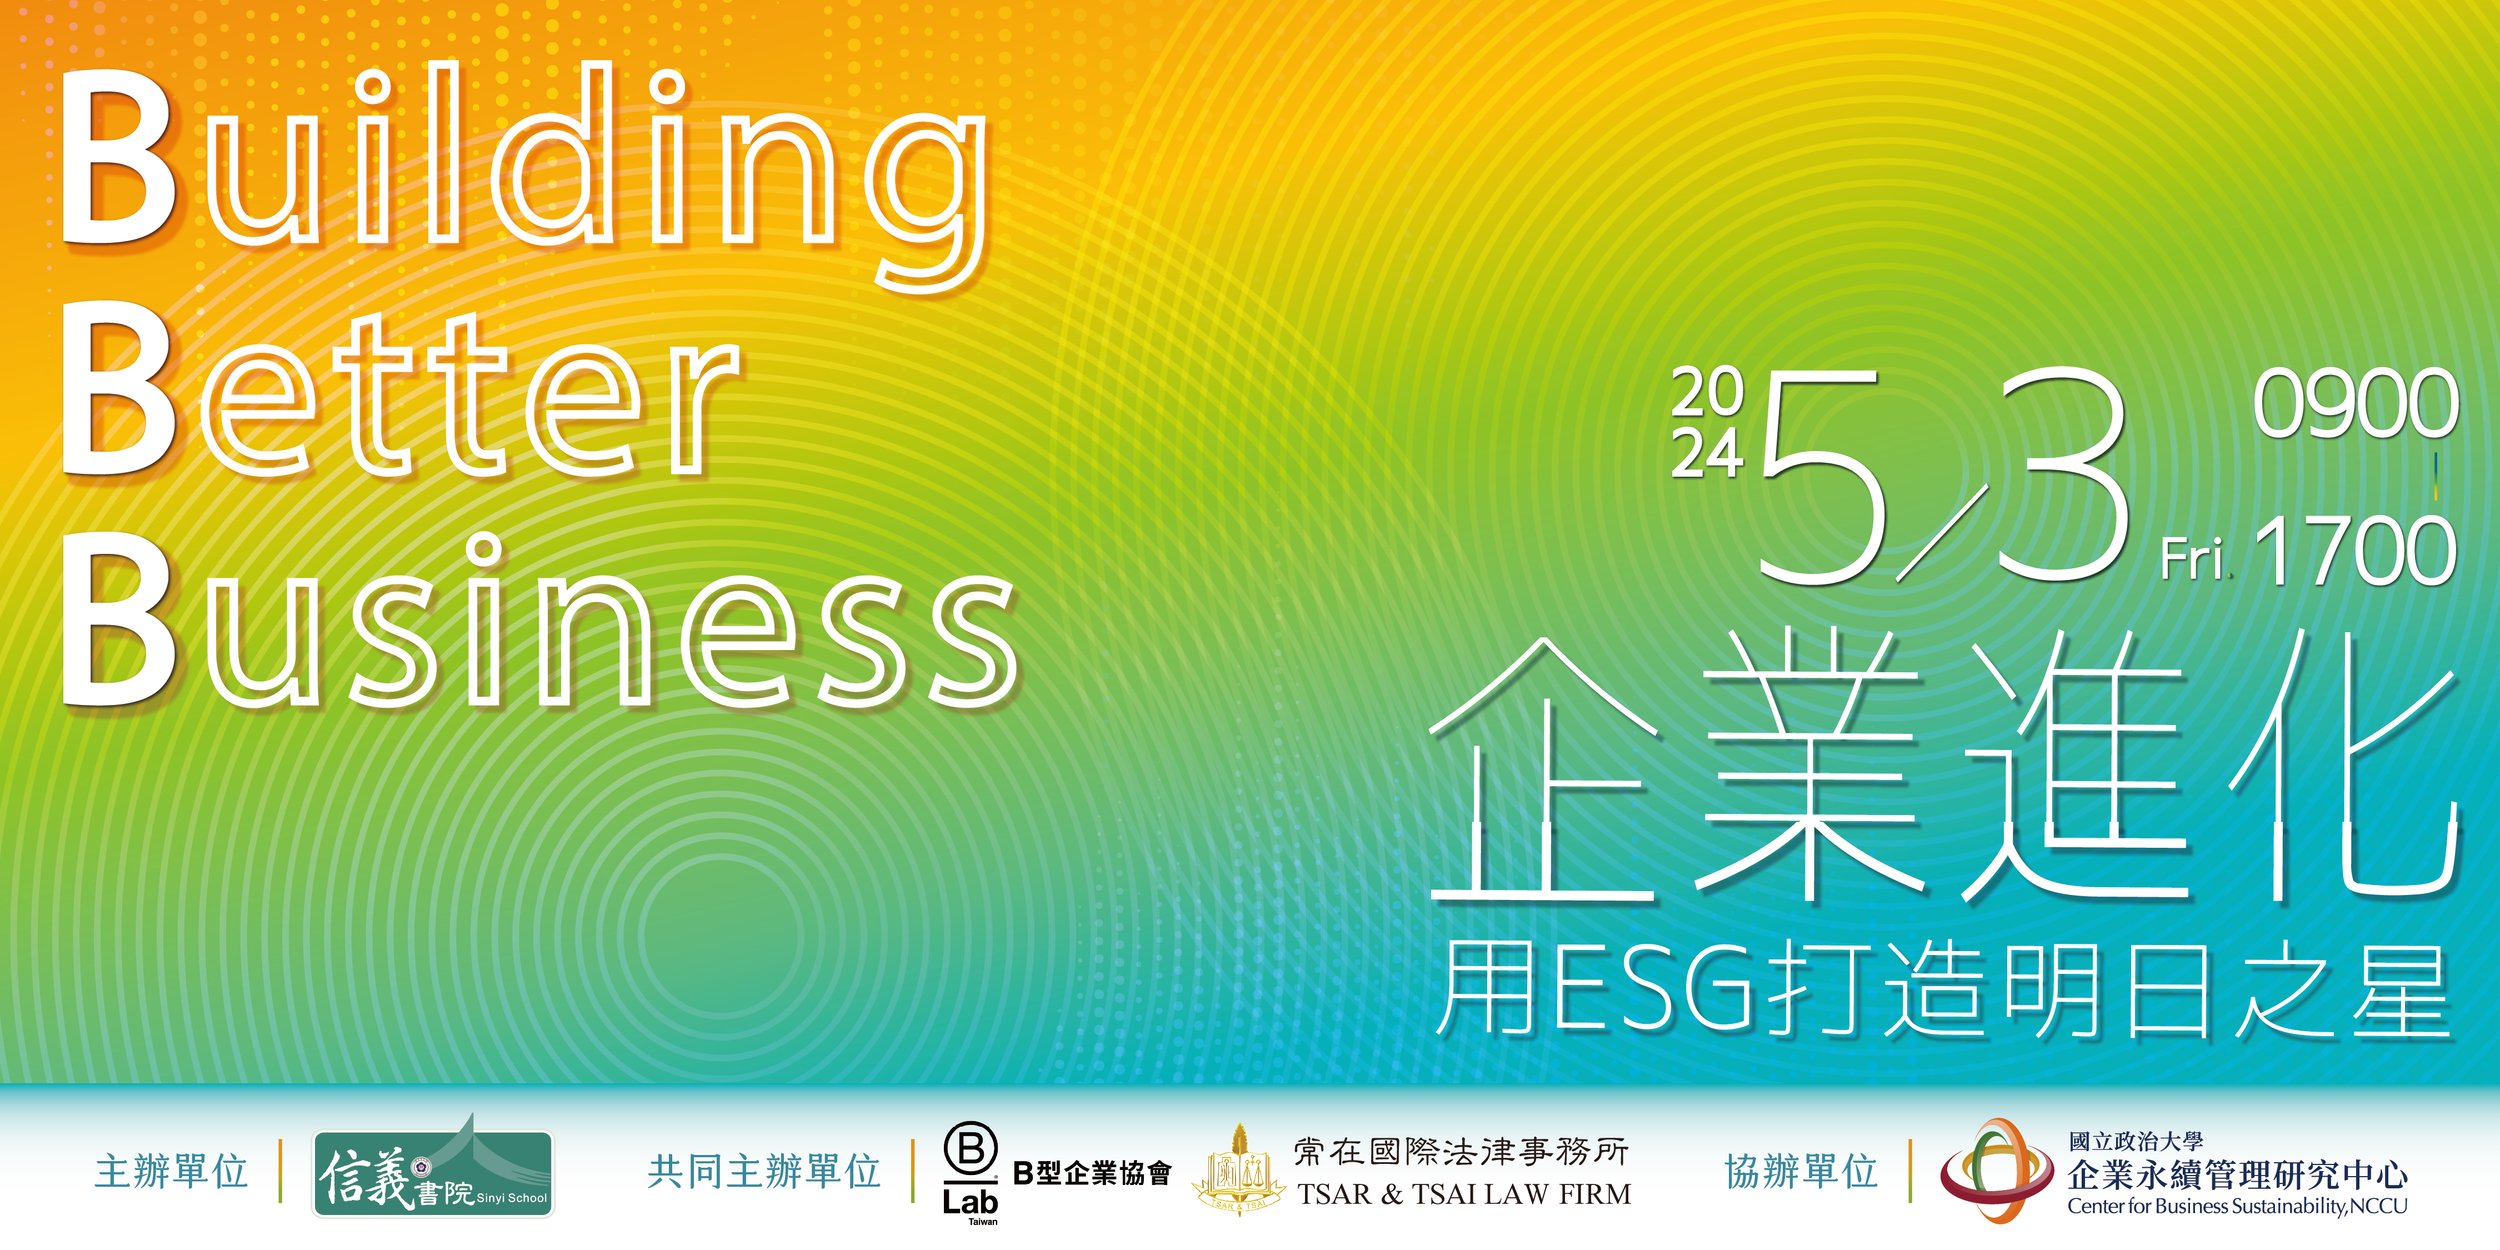   中小企業ESG國際論壇     立即報名!   